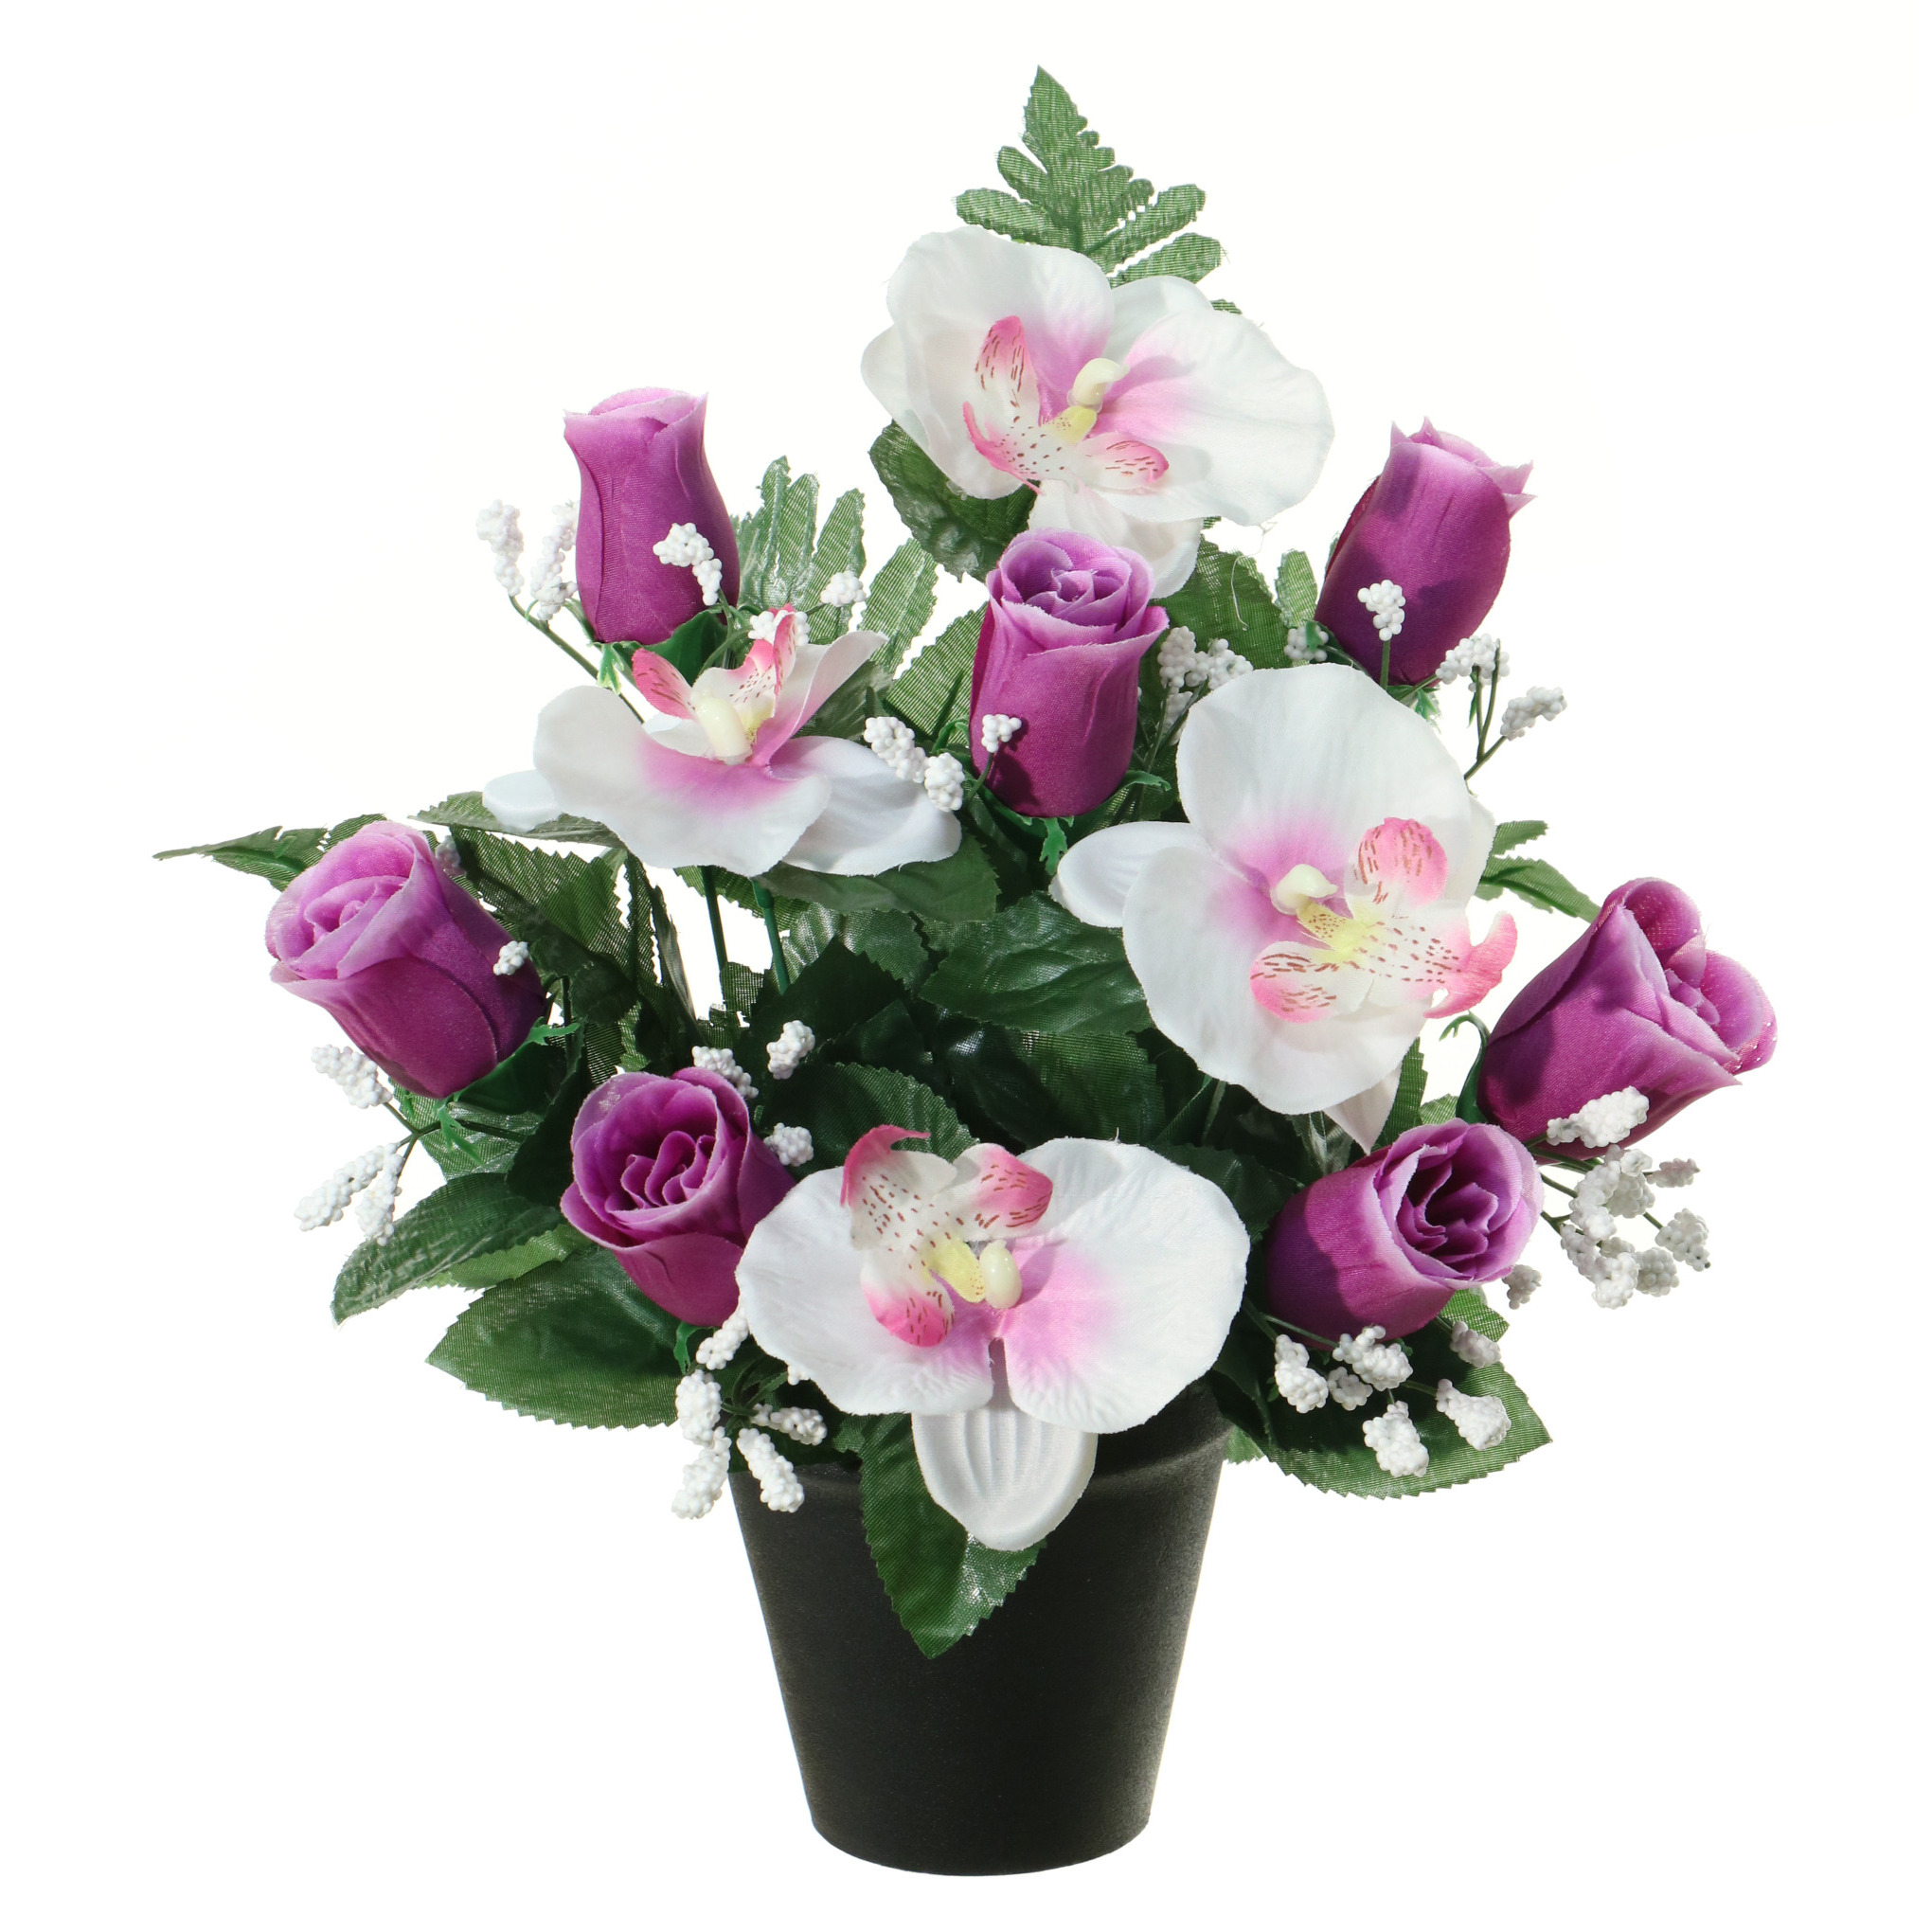 Kunstbloemen plantje in pot wit-paars 28 cm Bloemstuk ornament paars-bladgroen